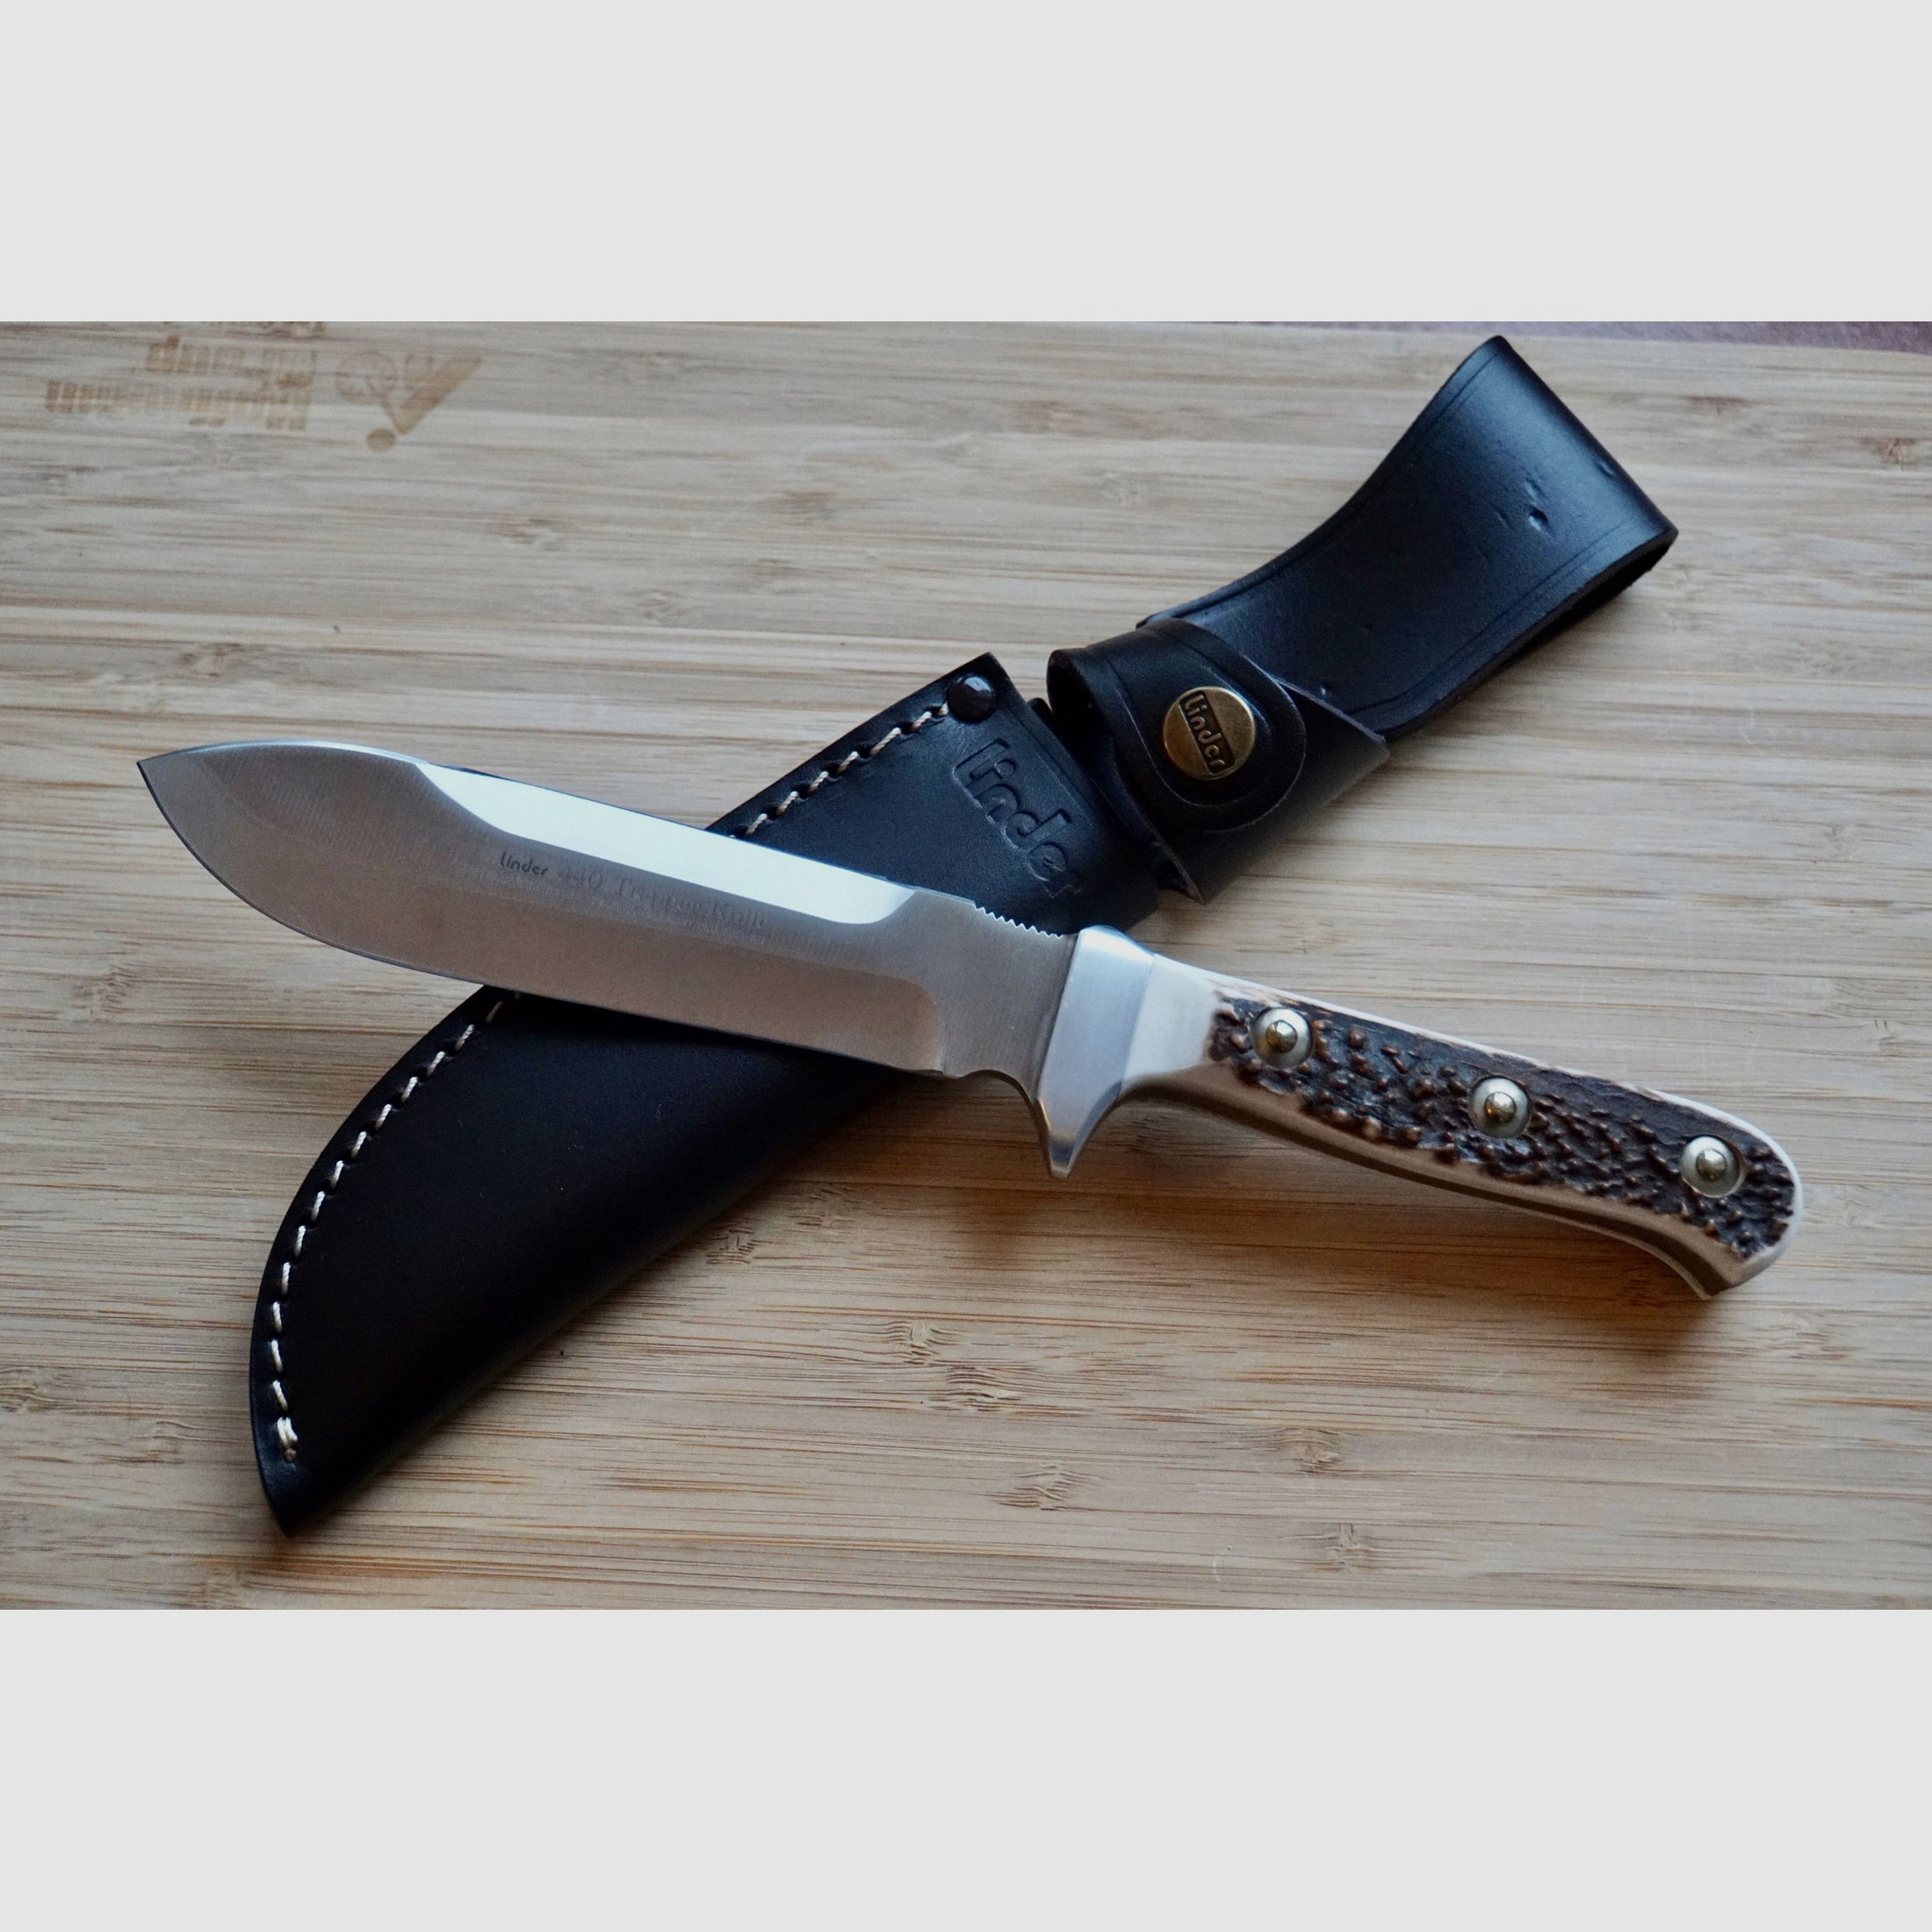 Linder Hunting Knife Modell "Trapper"